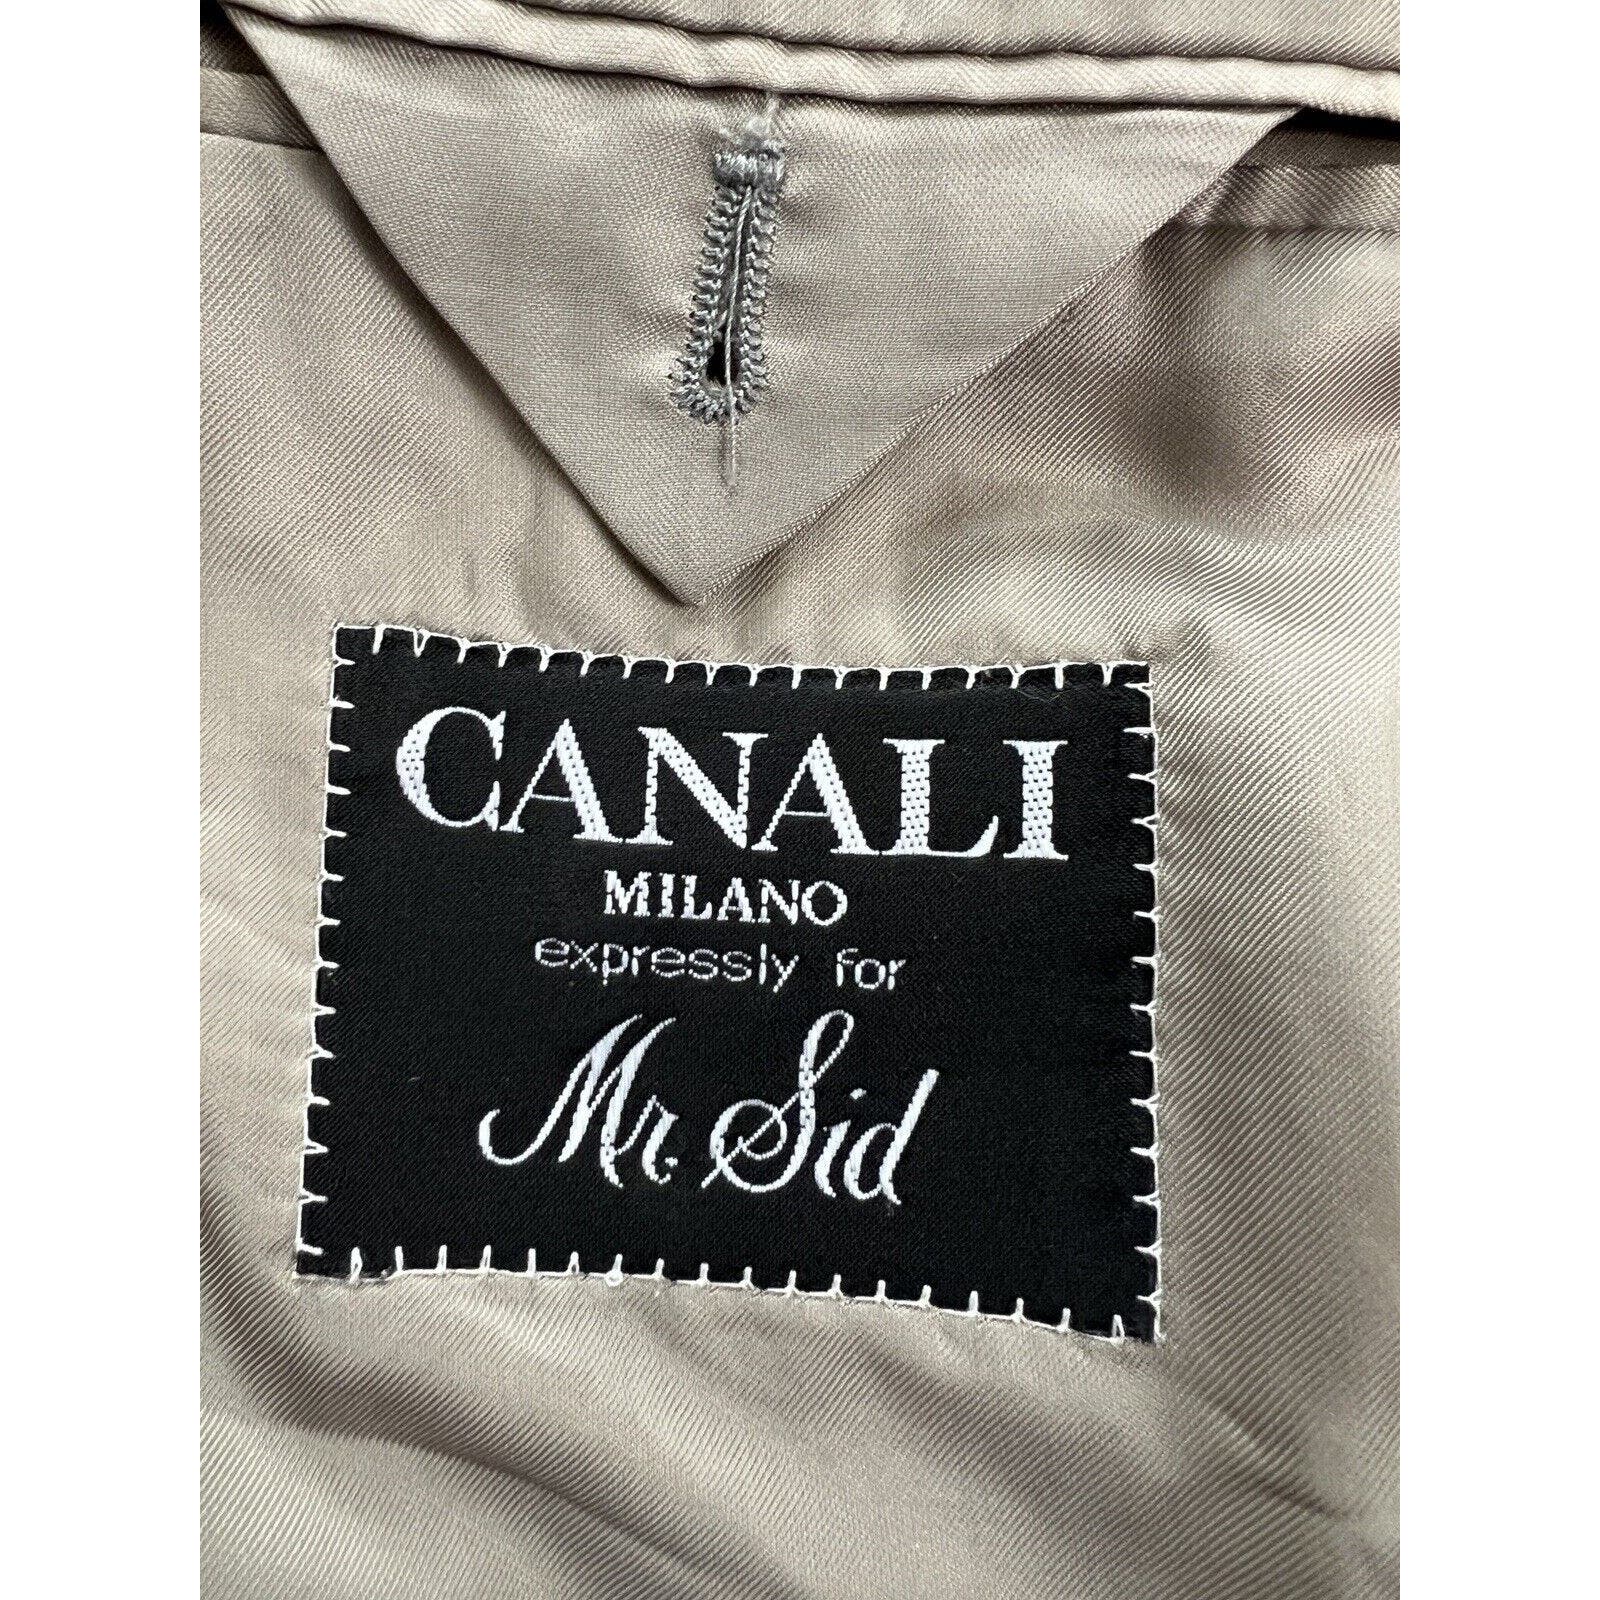 Canali 2 Button Sport Coat Men’s EUR 58R US 48R Super 100’s Wool Gray Plaid